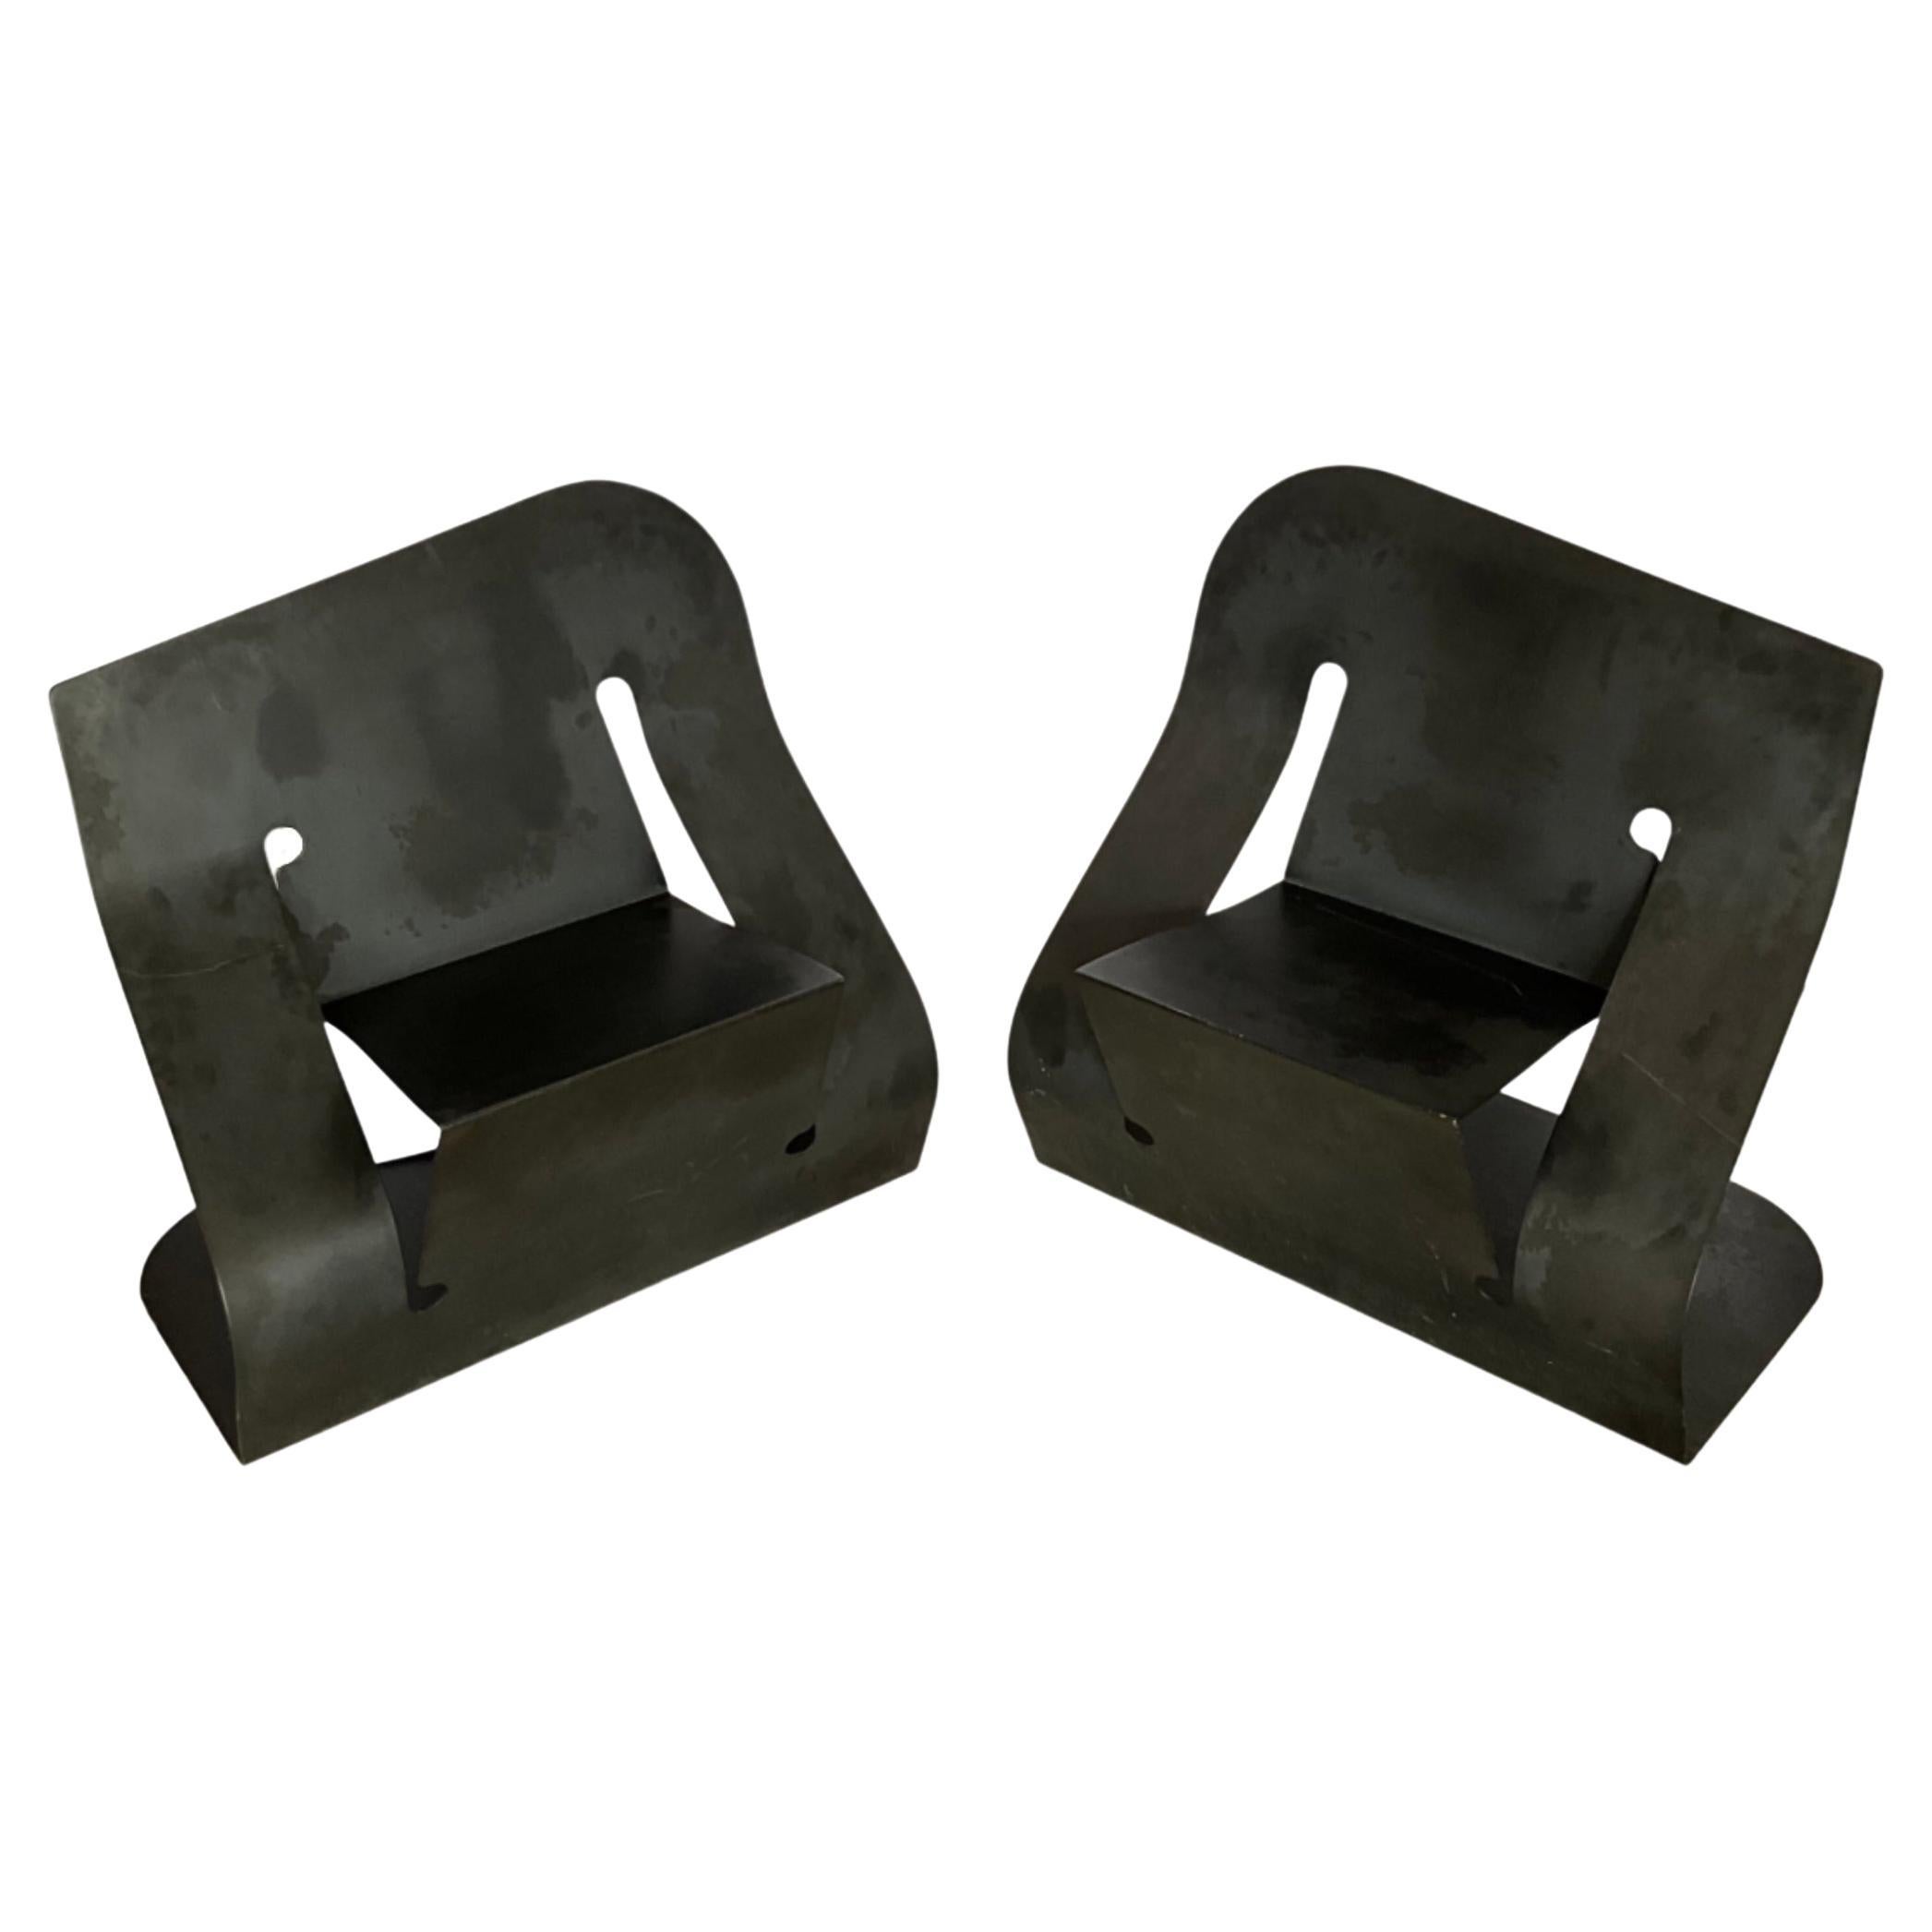 Pair of Black Steel “Rocker” Chairs by Rico Eastman